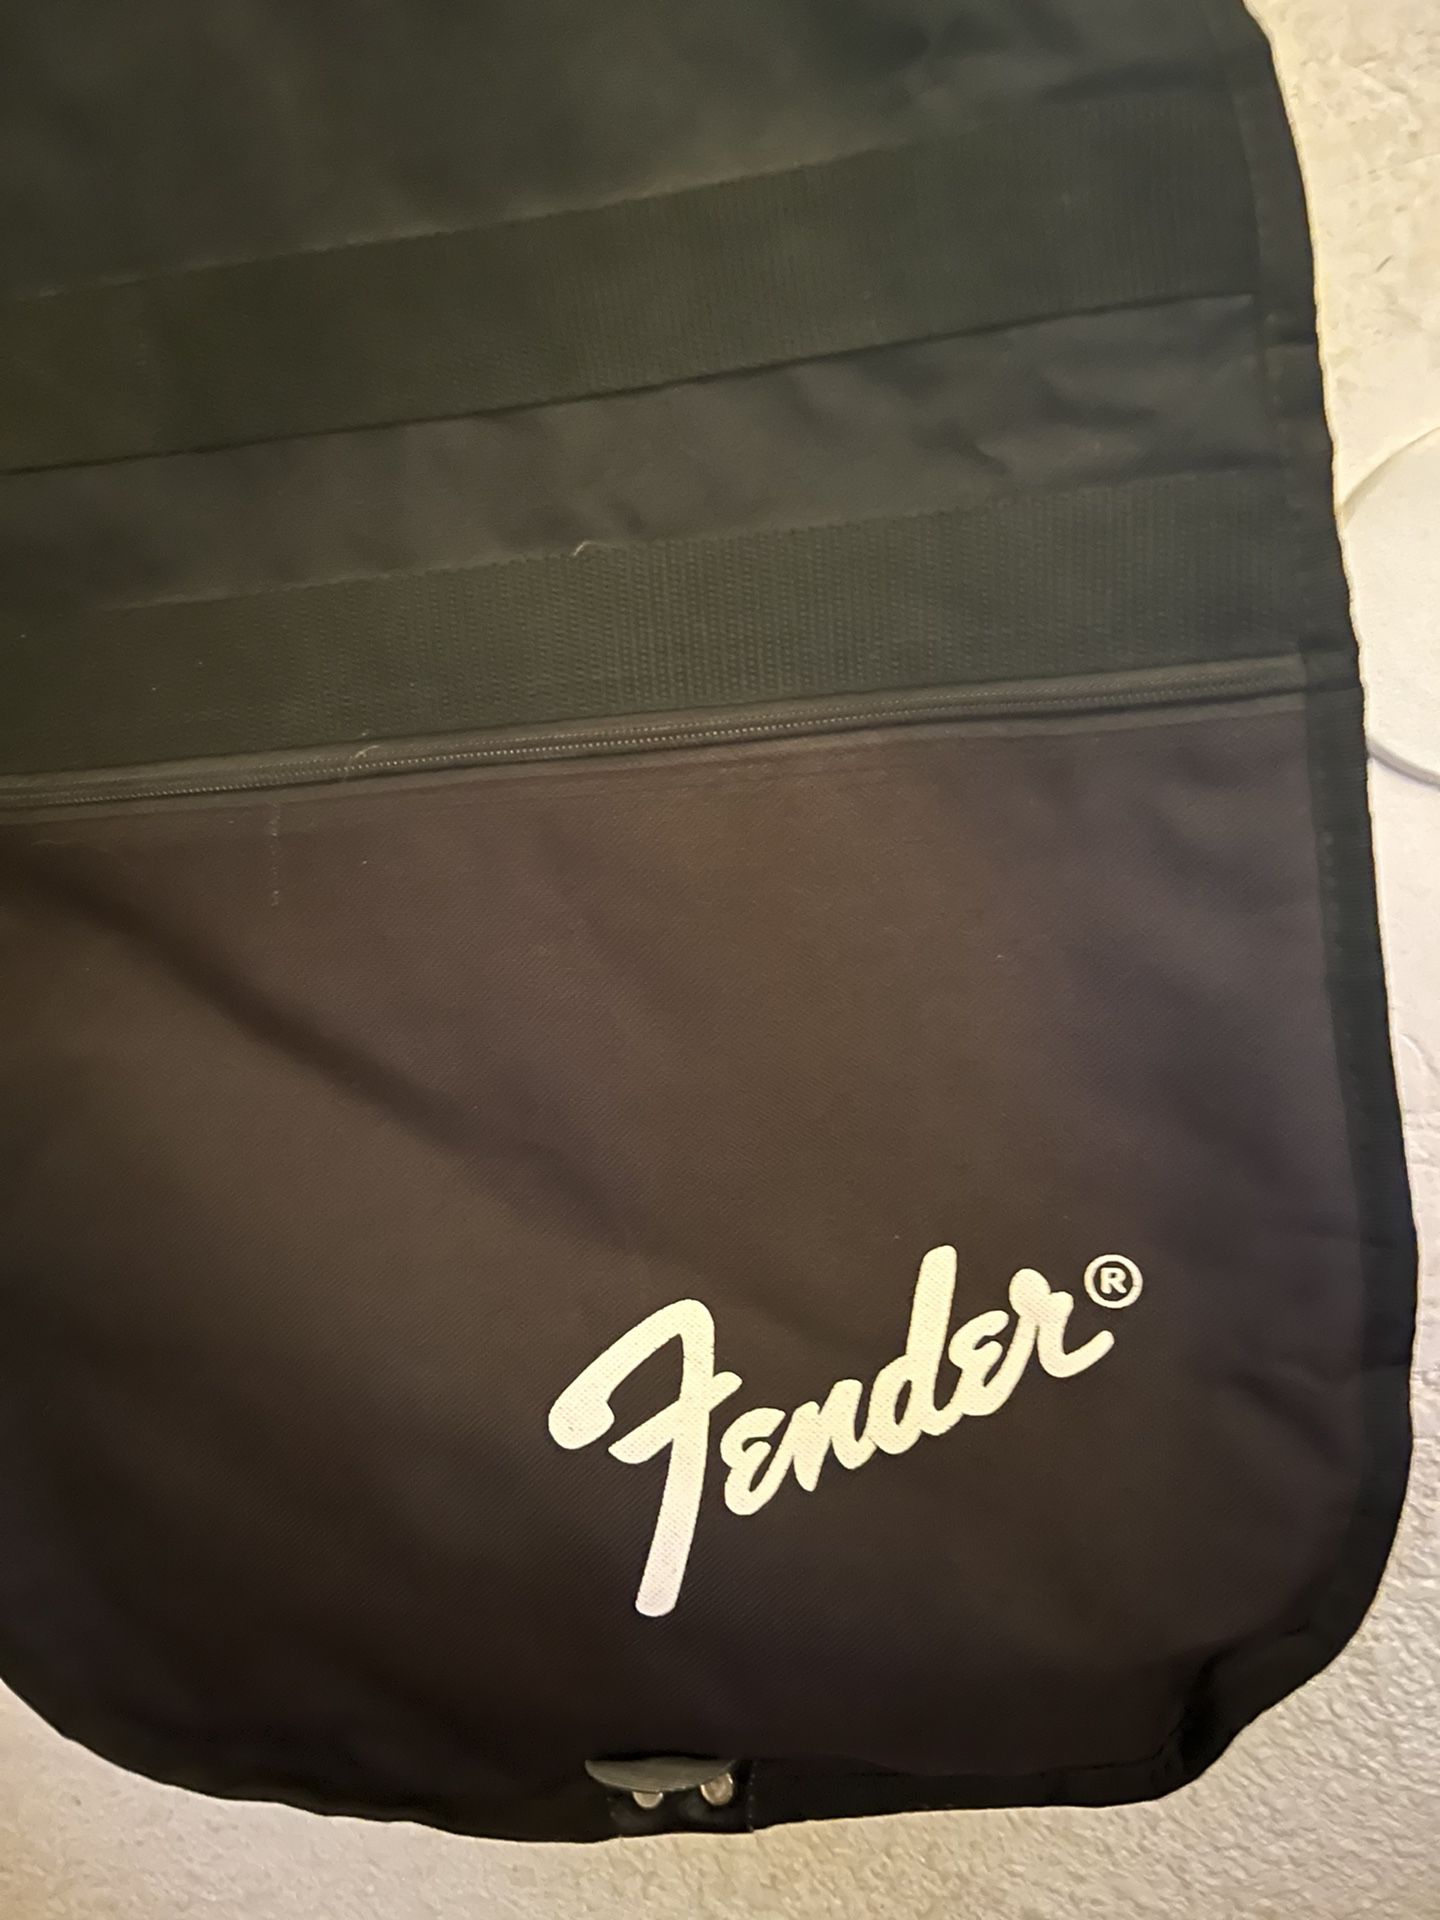 Used Fender Guitar Case/bag